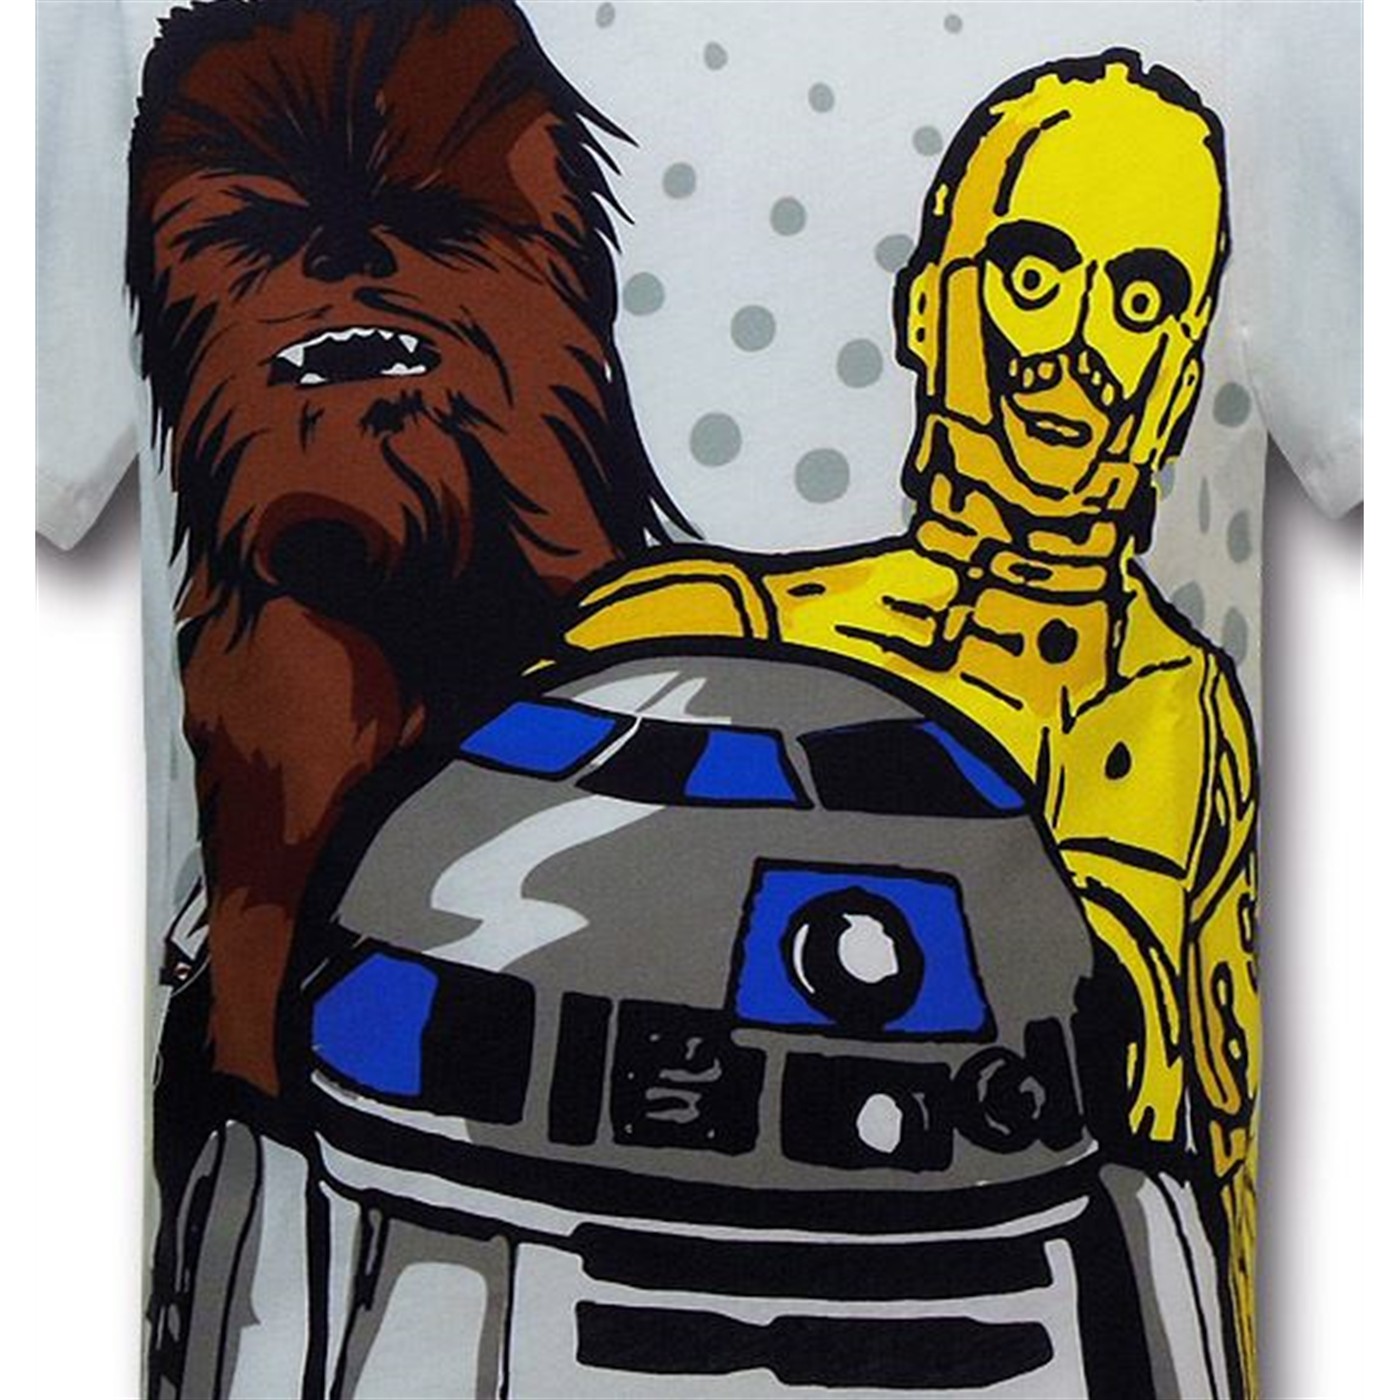 Star Wars Droids & Wookie Kids 30 Single T-Shirt